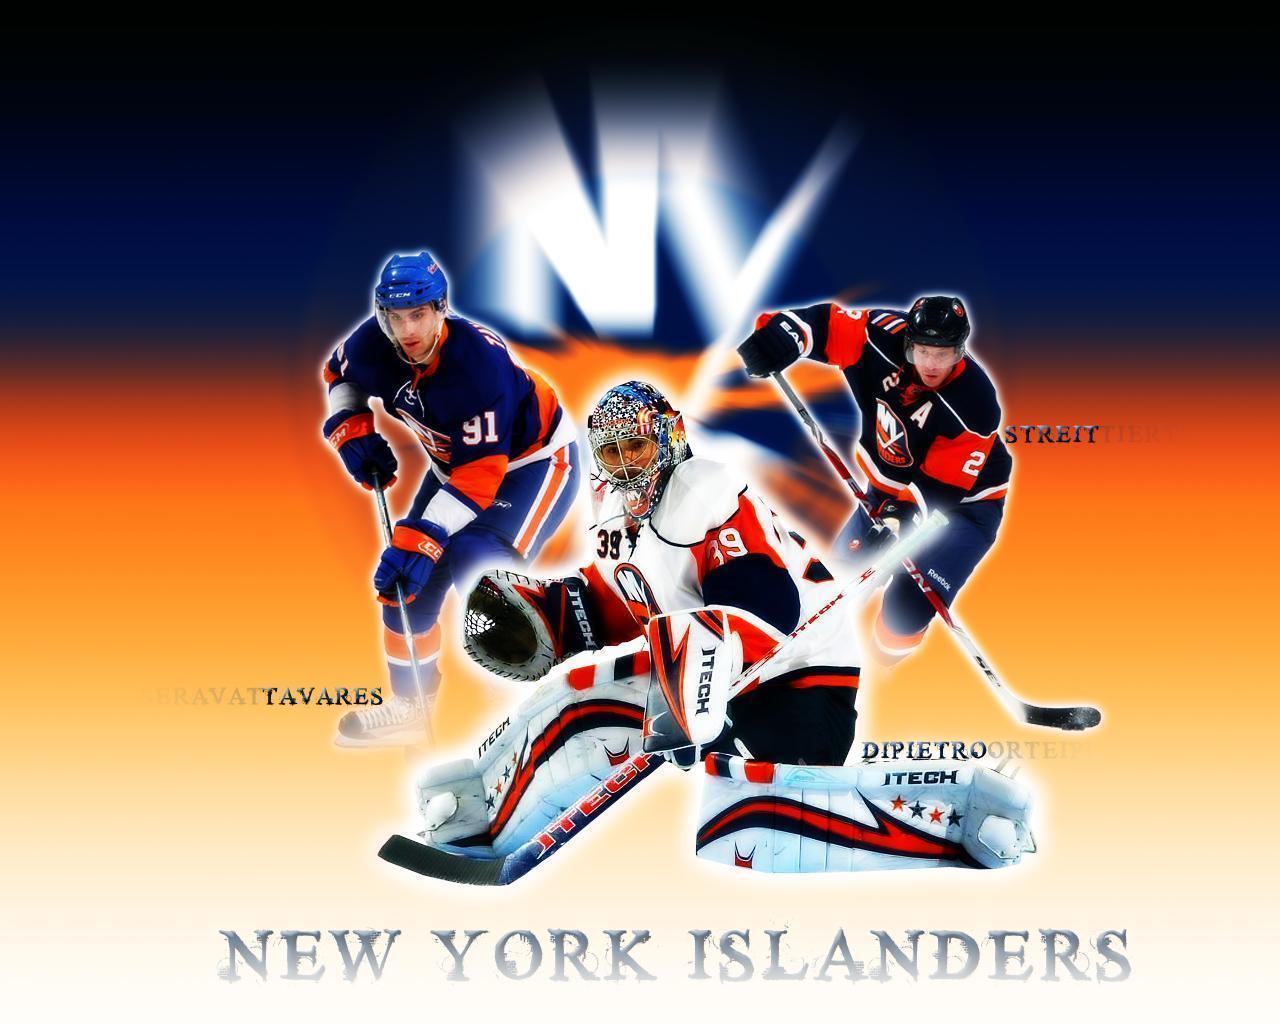 New York Islanders Wallpapers - Top 20 Best New York Islanders Wallpapers [  HQ ]